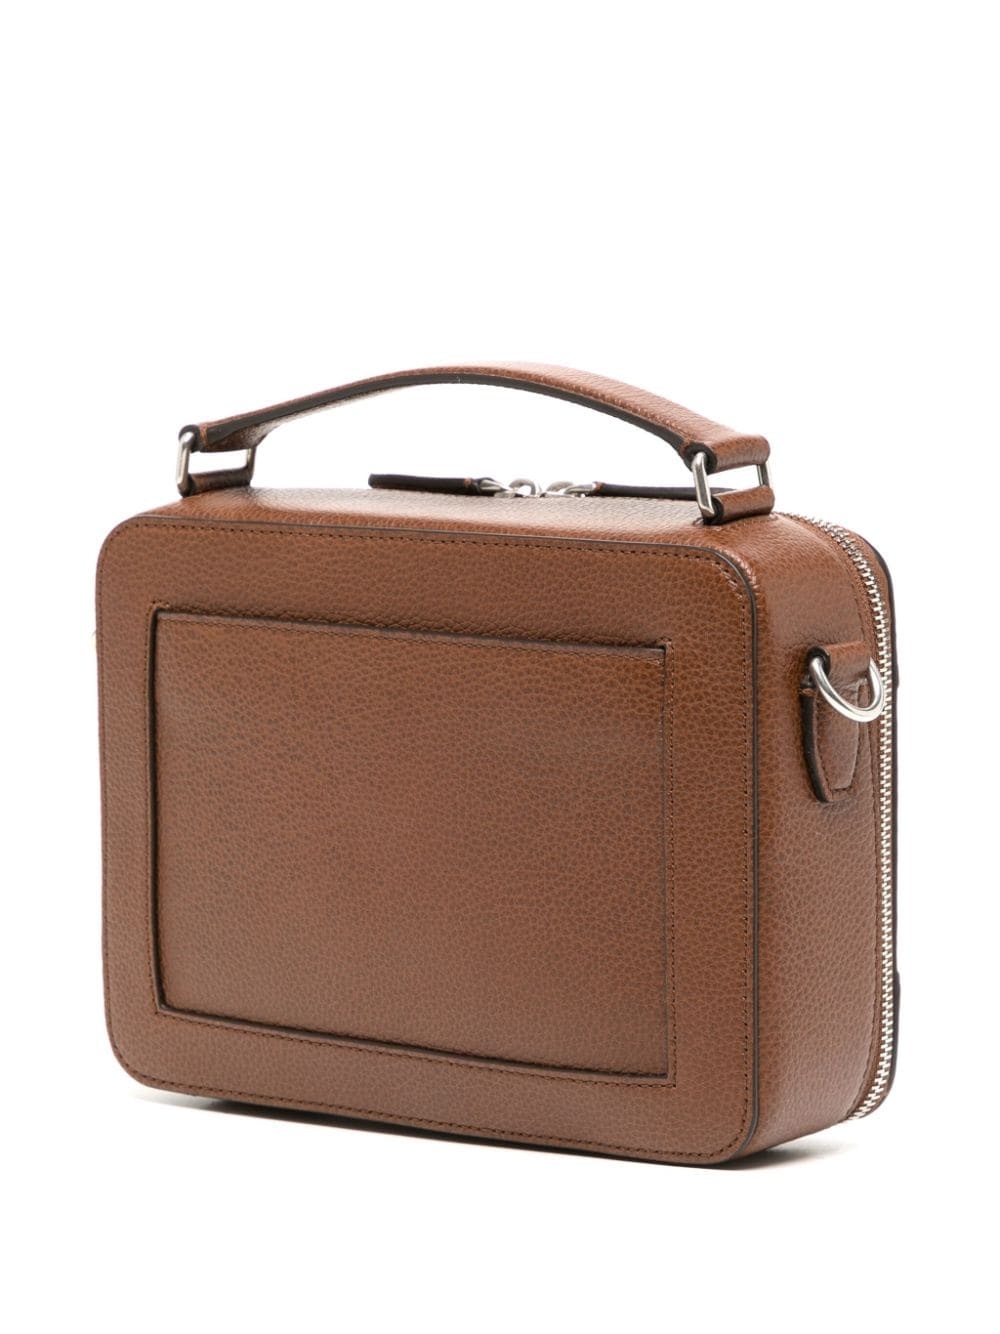 Belgrave leather messenger bag - 3